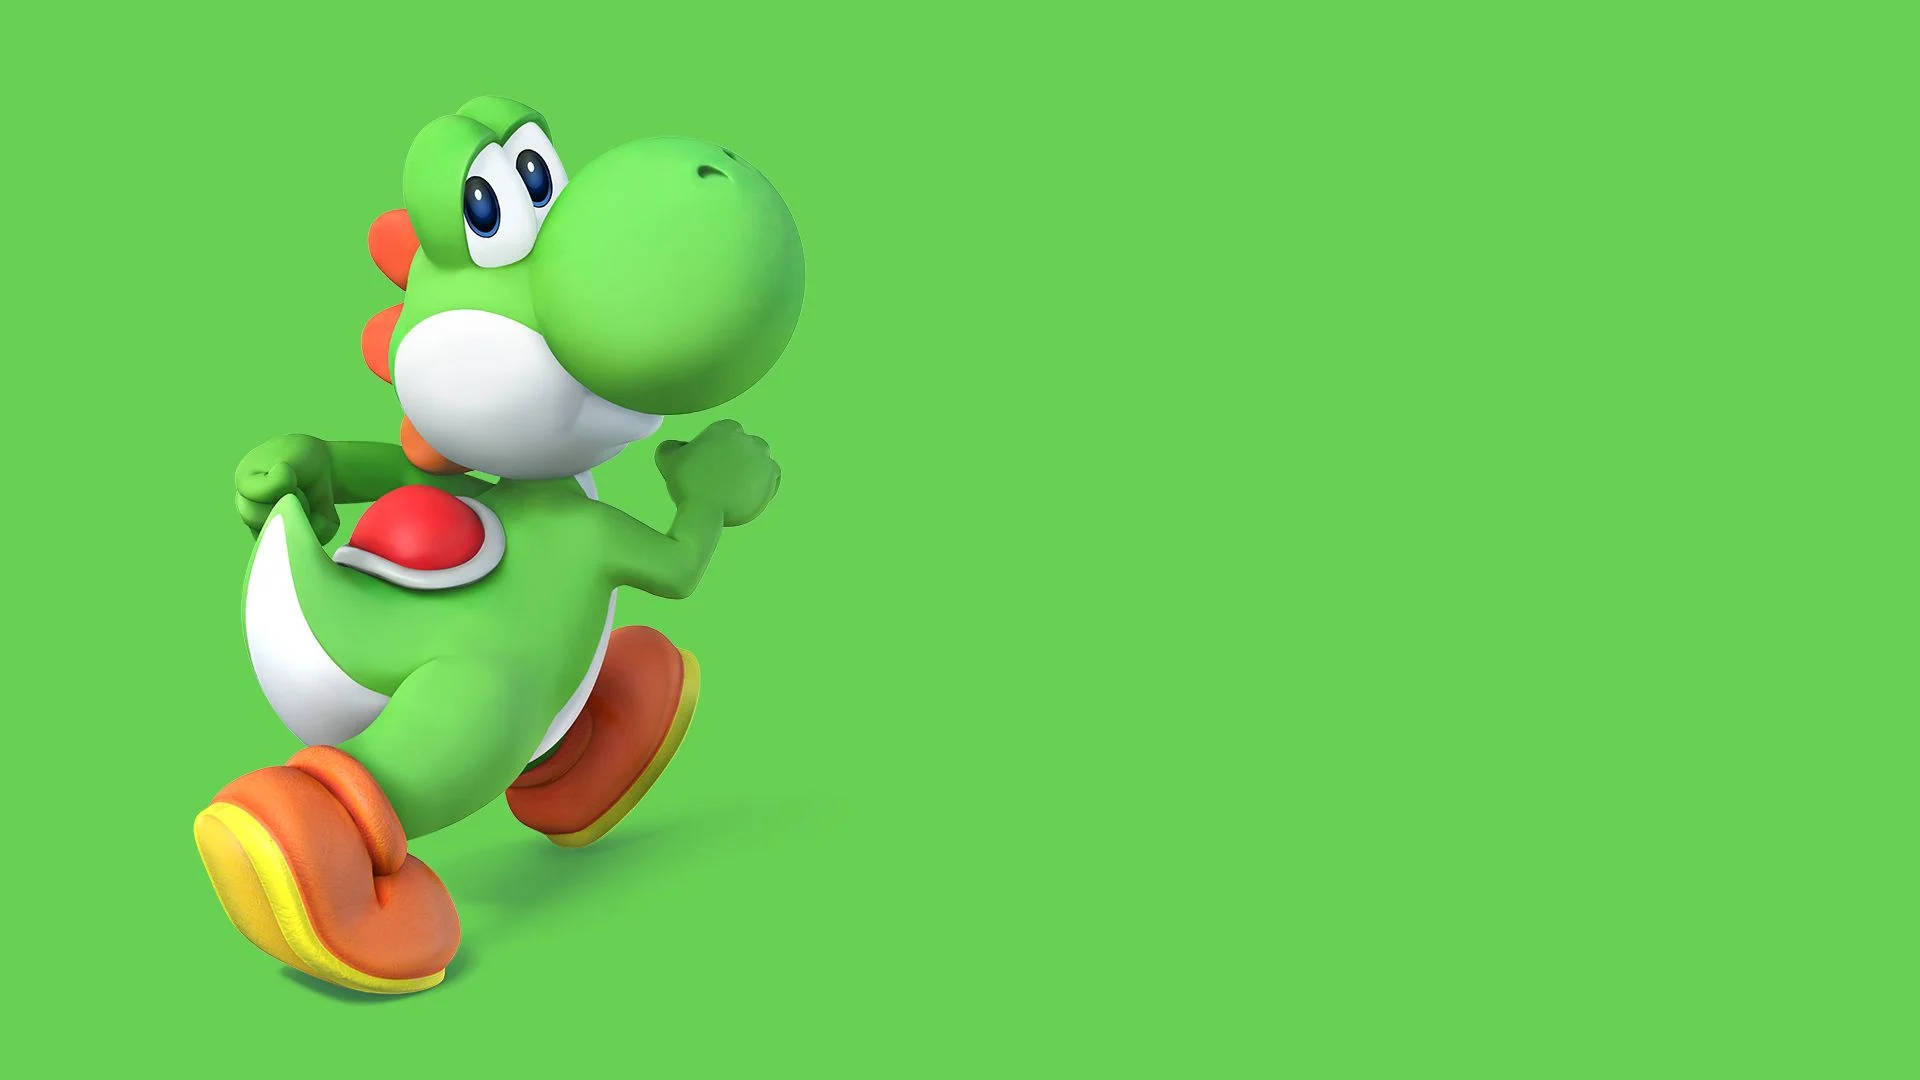 Yoshi Nintendo Character Background